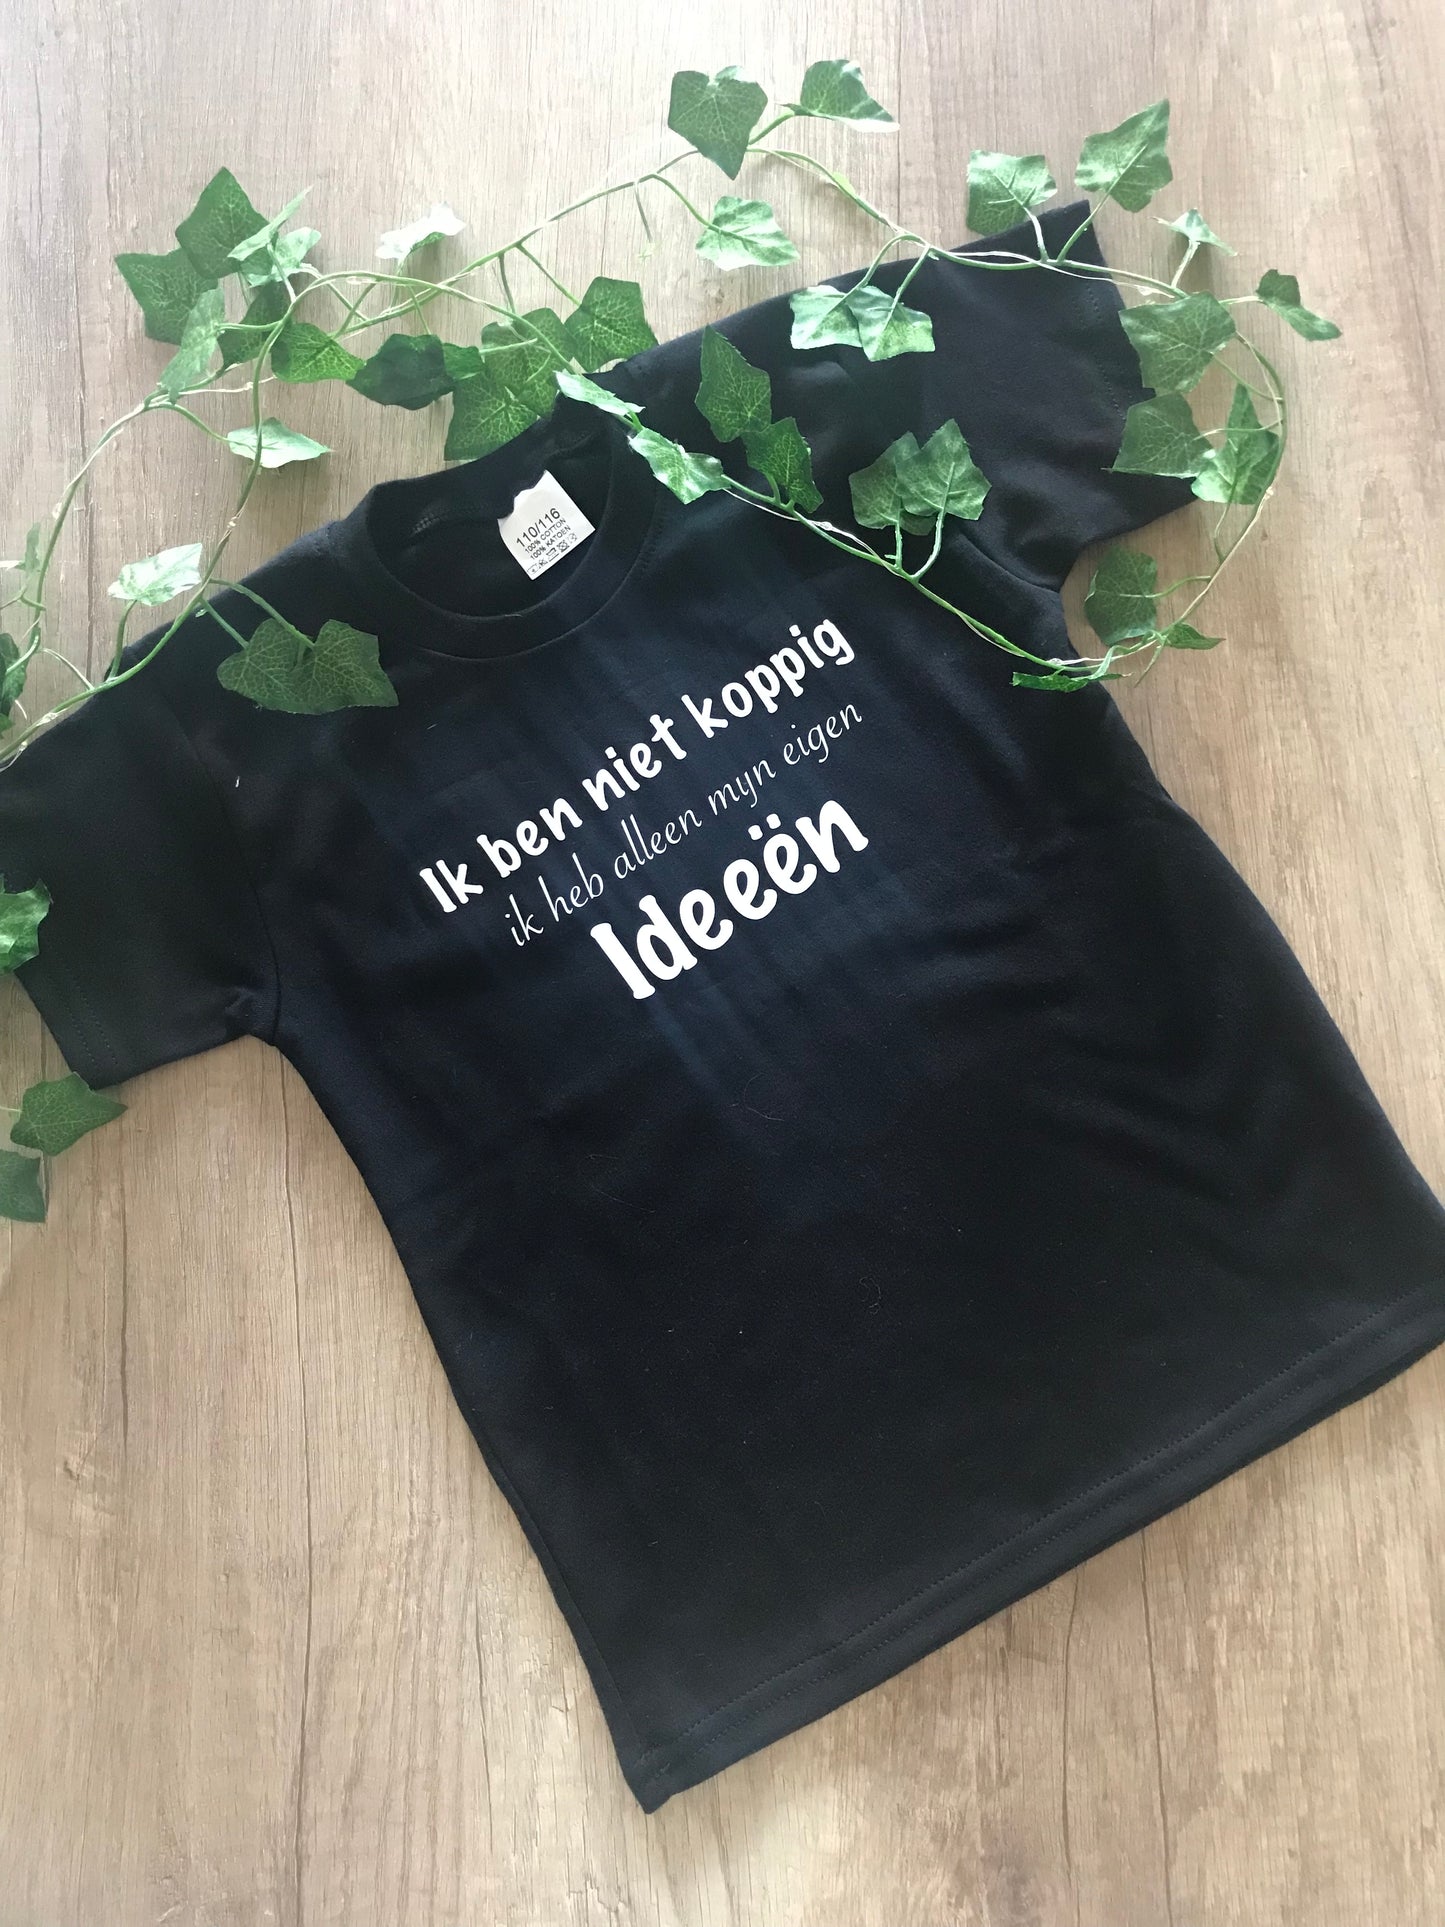 T-shirt 'ik ben niet koppig ik heb alleen mijn eigen ideeen'